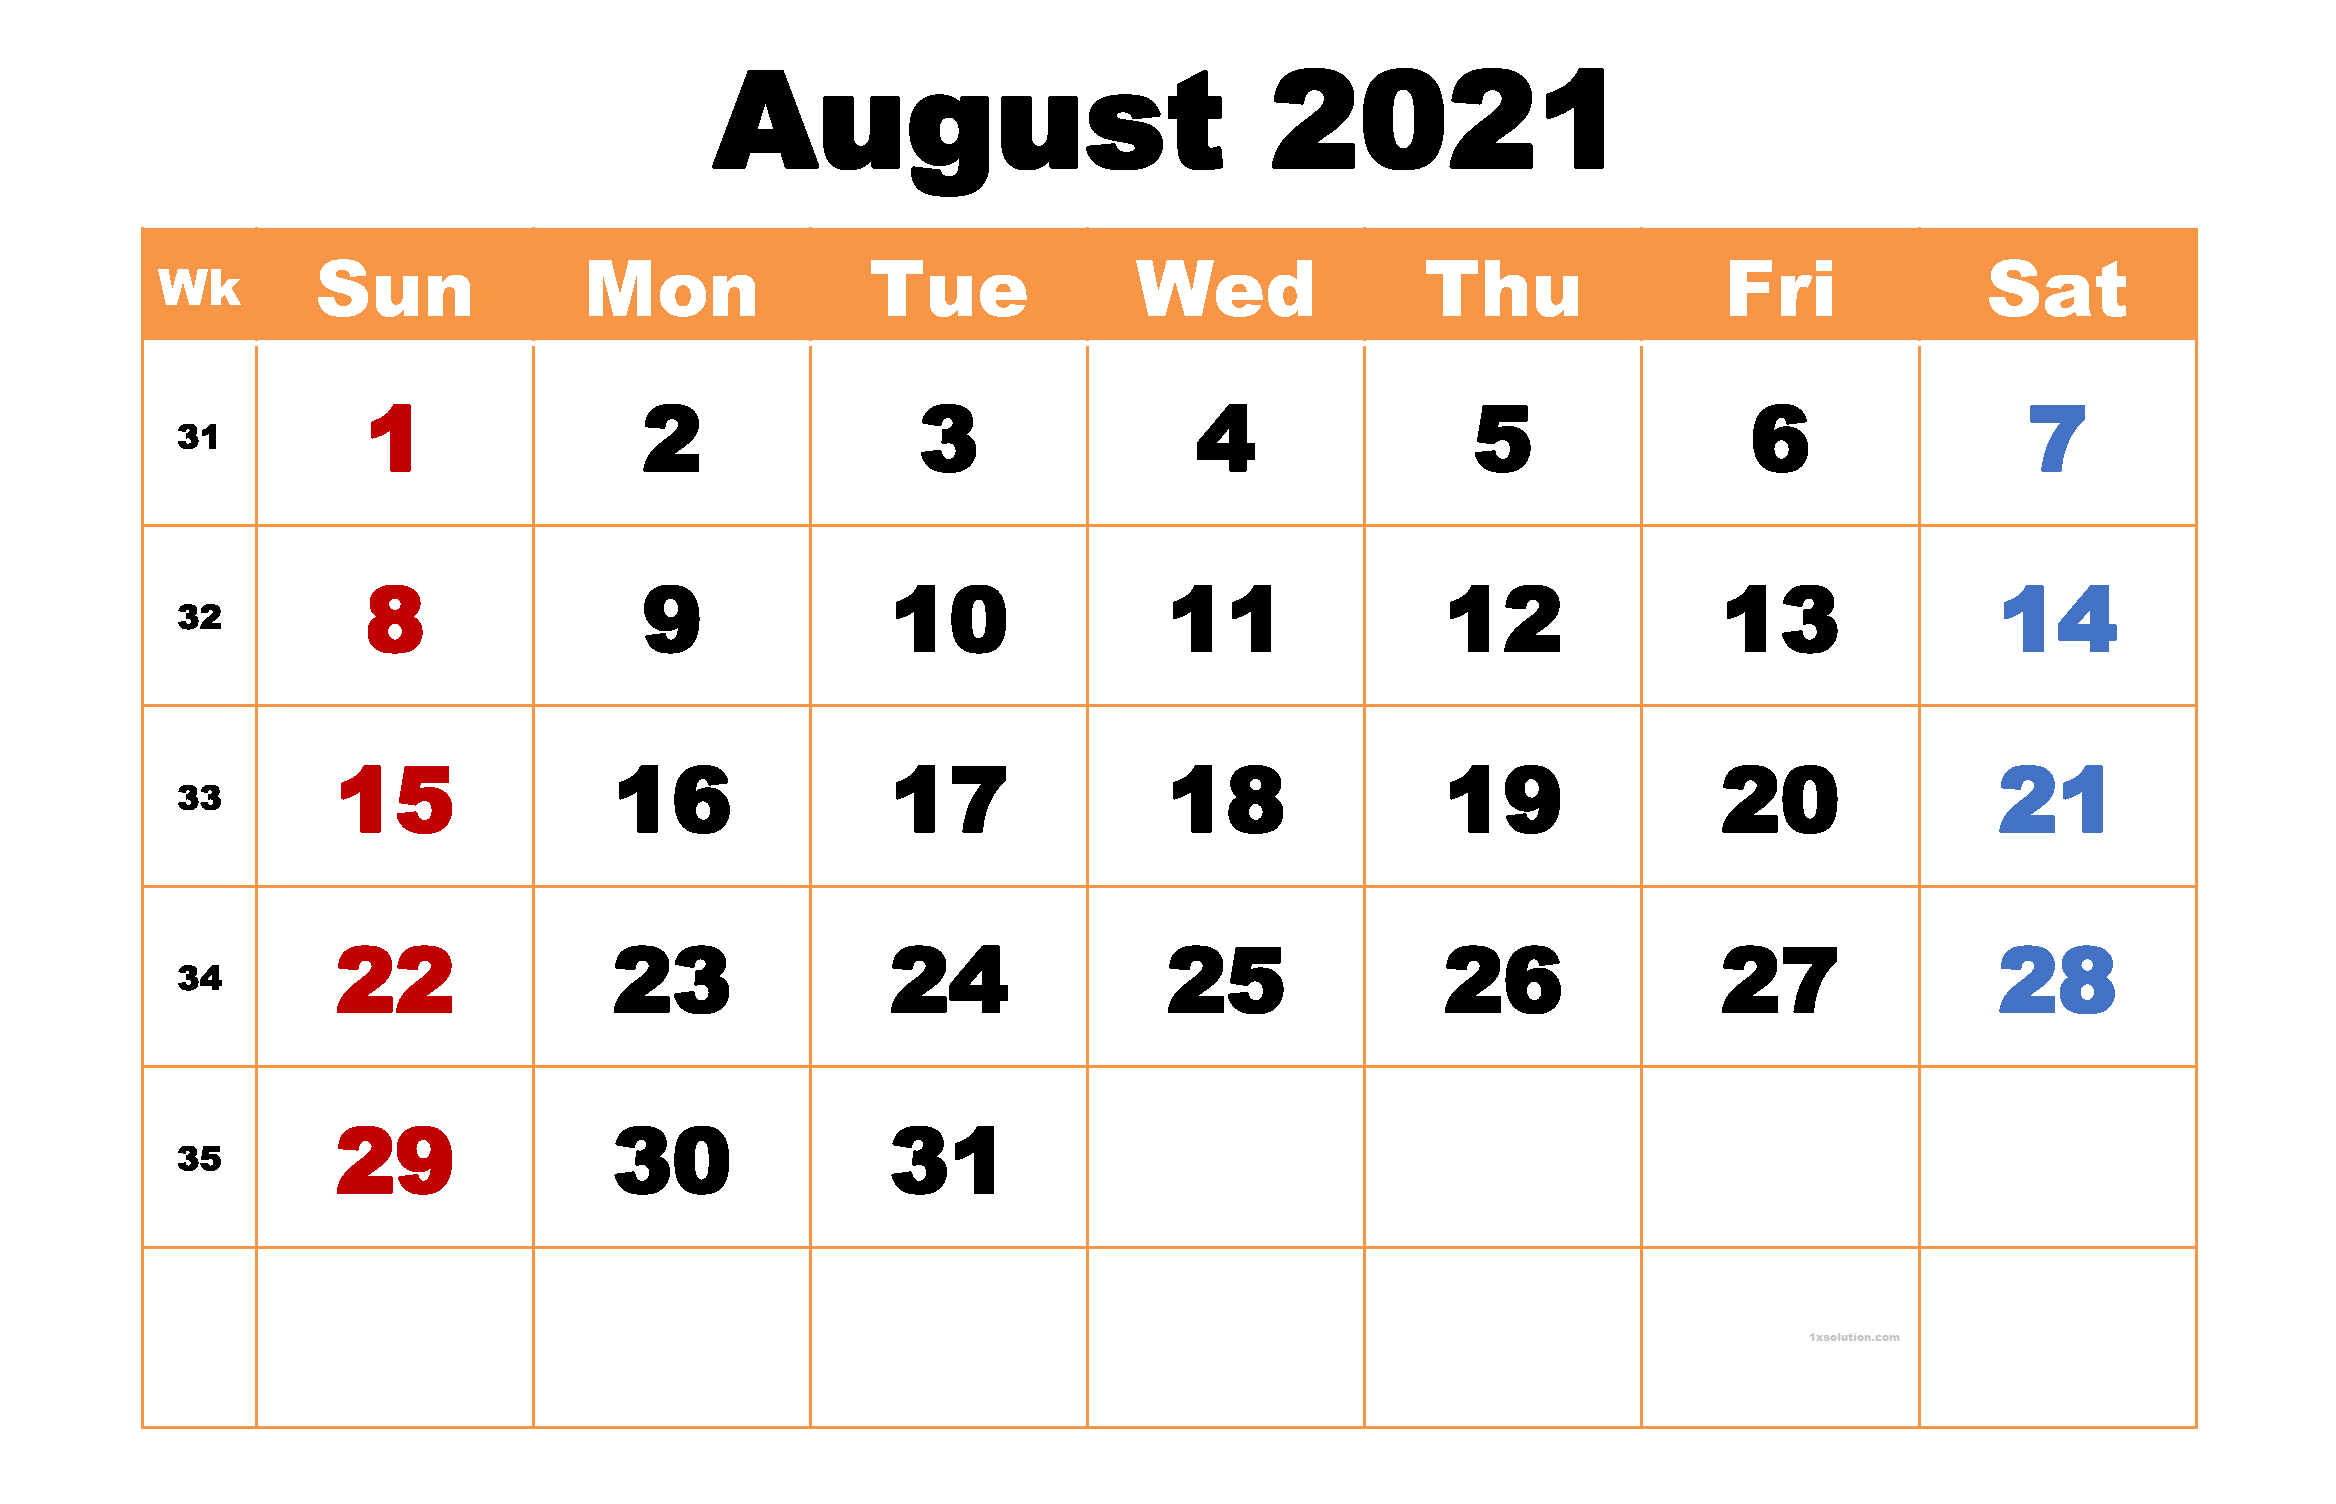 Get Calendar Sept 2021 To August 2022